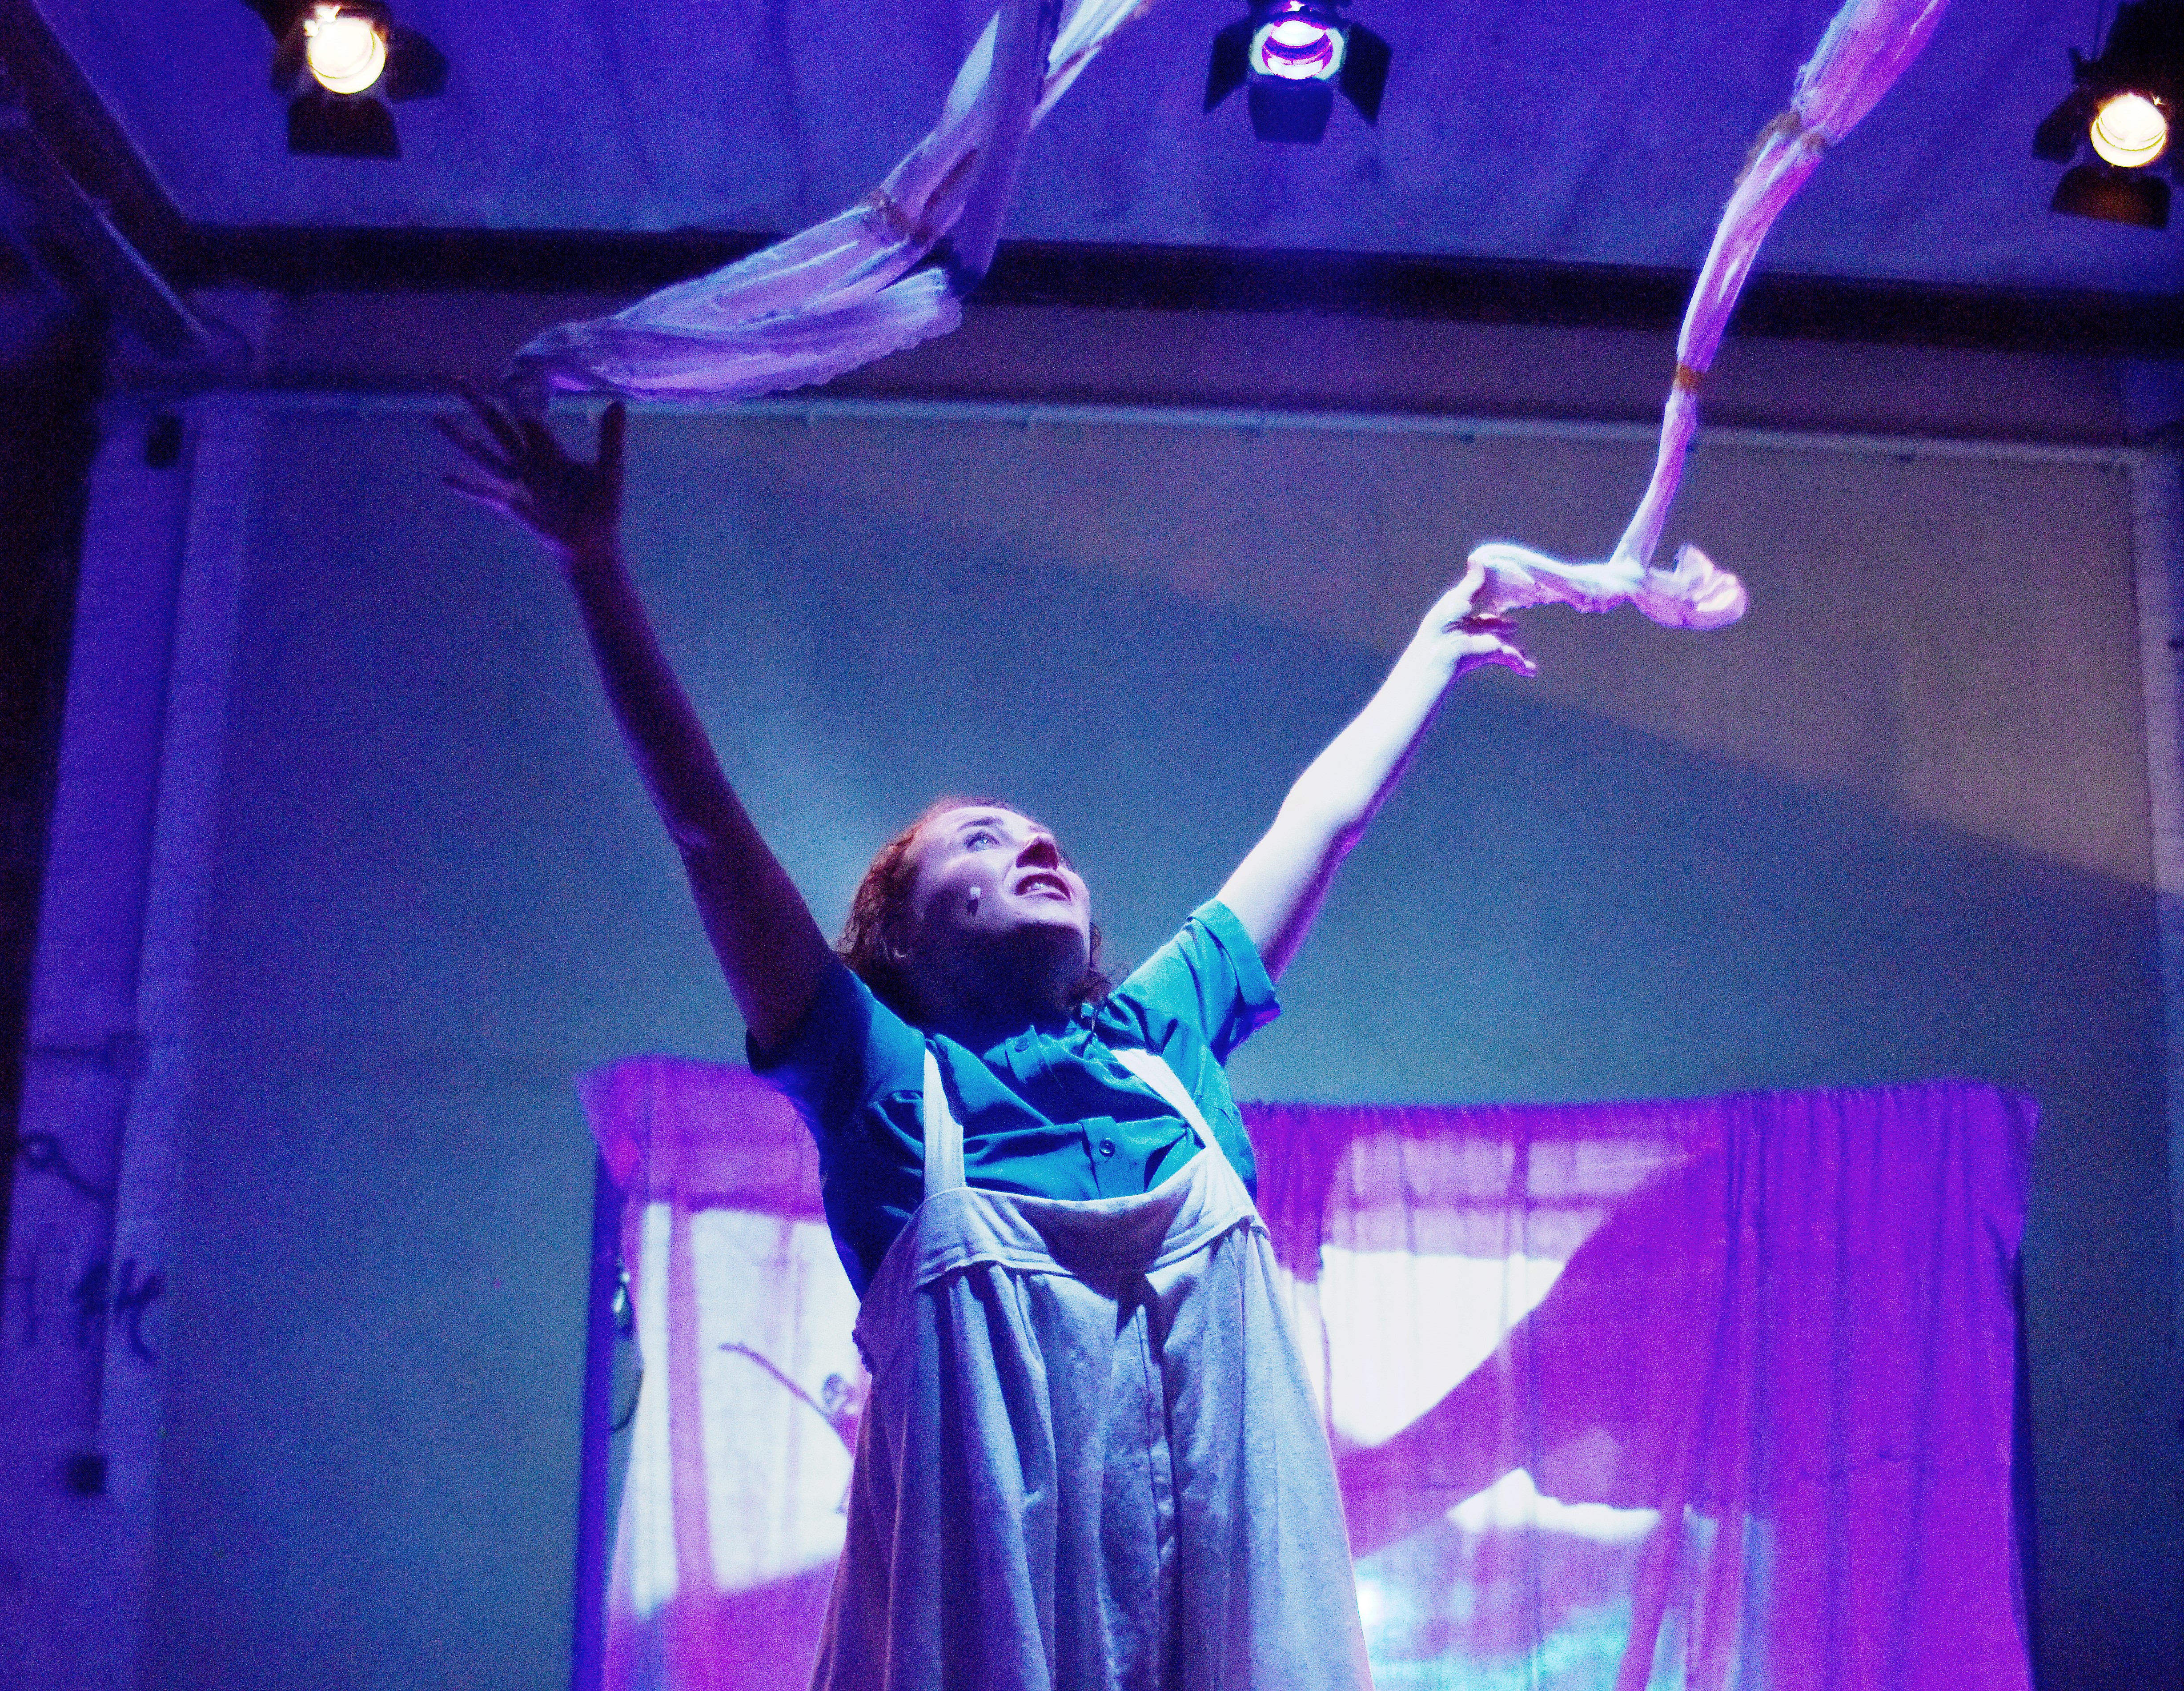 Ulrike Kley wirft mit ausgestreckten Armen zwei lange, weiße Bänder in die Luft. Der Raum hinter ihr zeigt eine Projektion und ist blau, magentafarben beleuchtet.